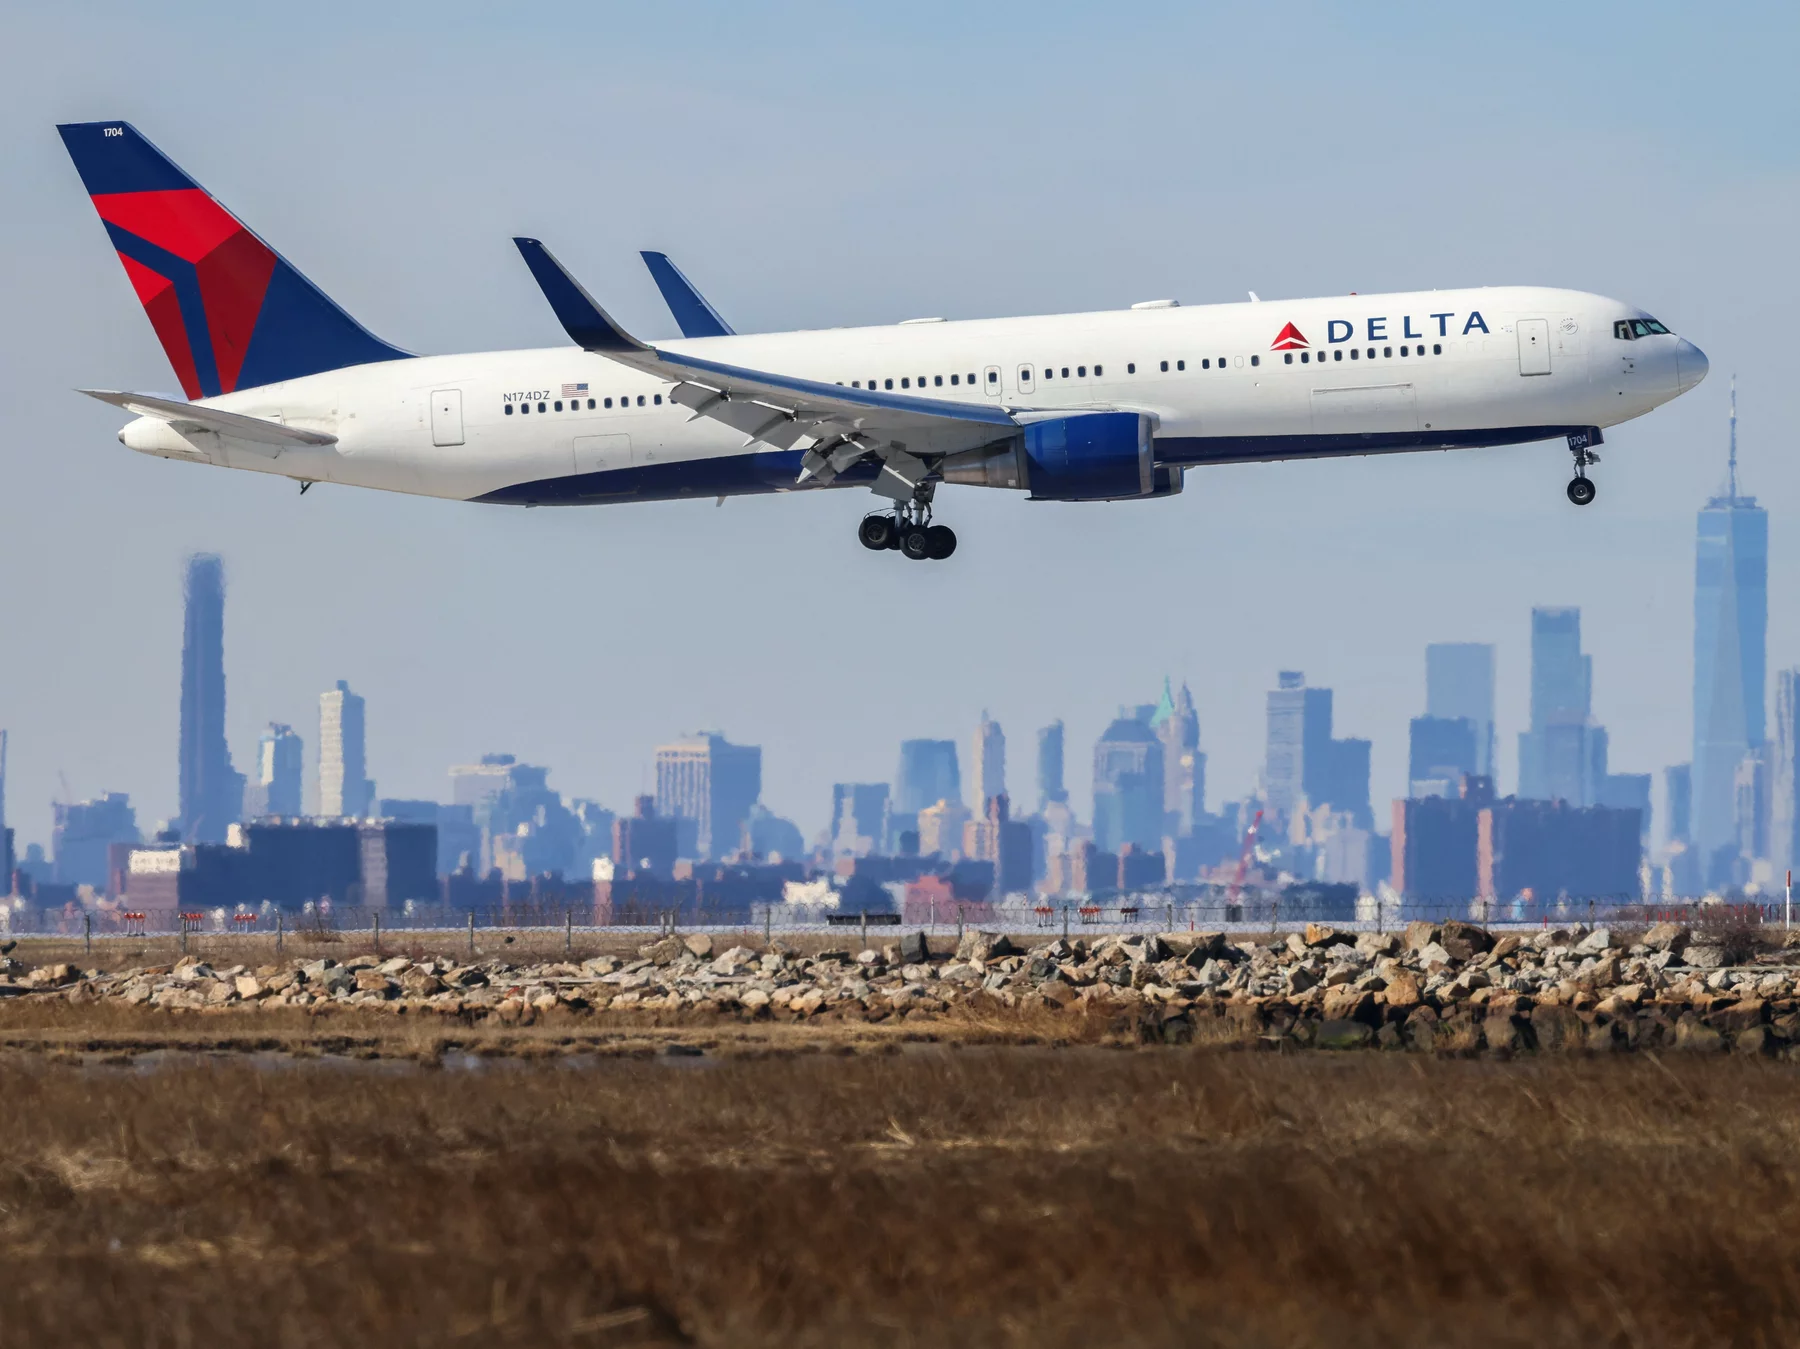 Delta flight makes emergency return